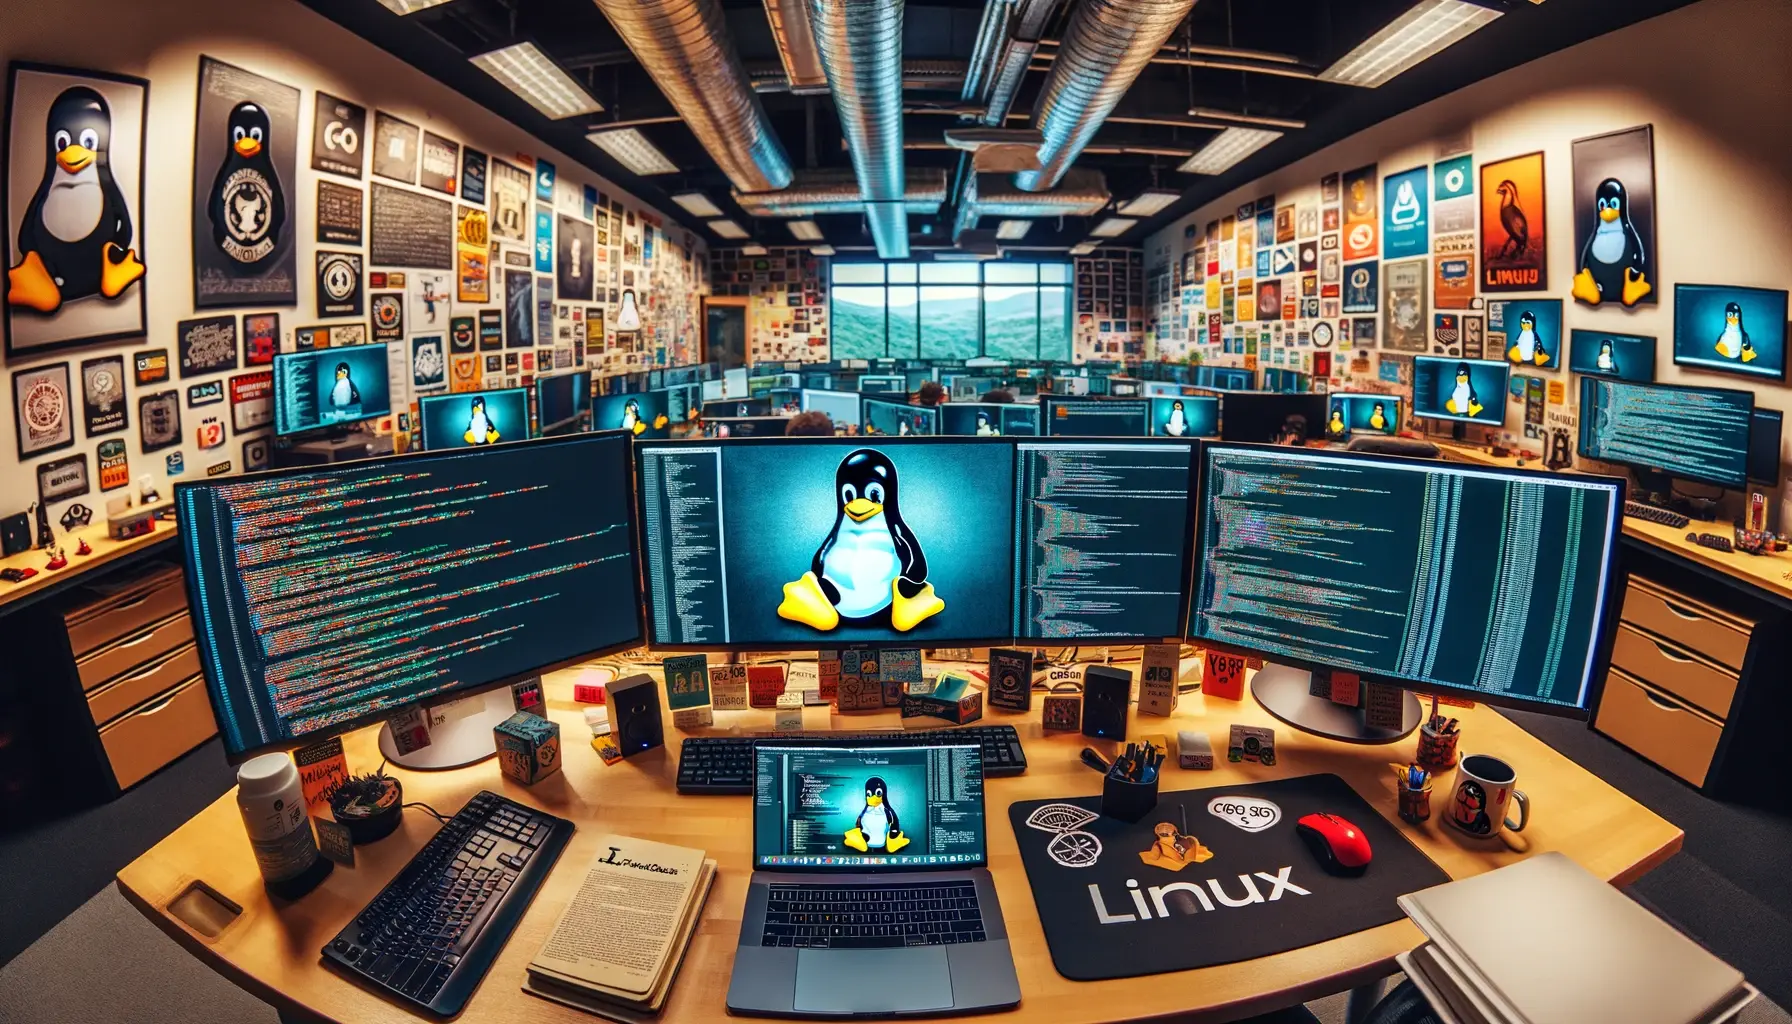 Širokoúhlý, panoramatický pohled na pracovní prostor věnovaný vývoji pro Linux.